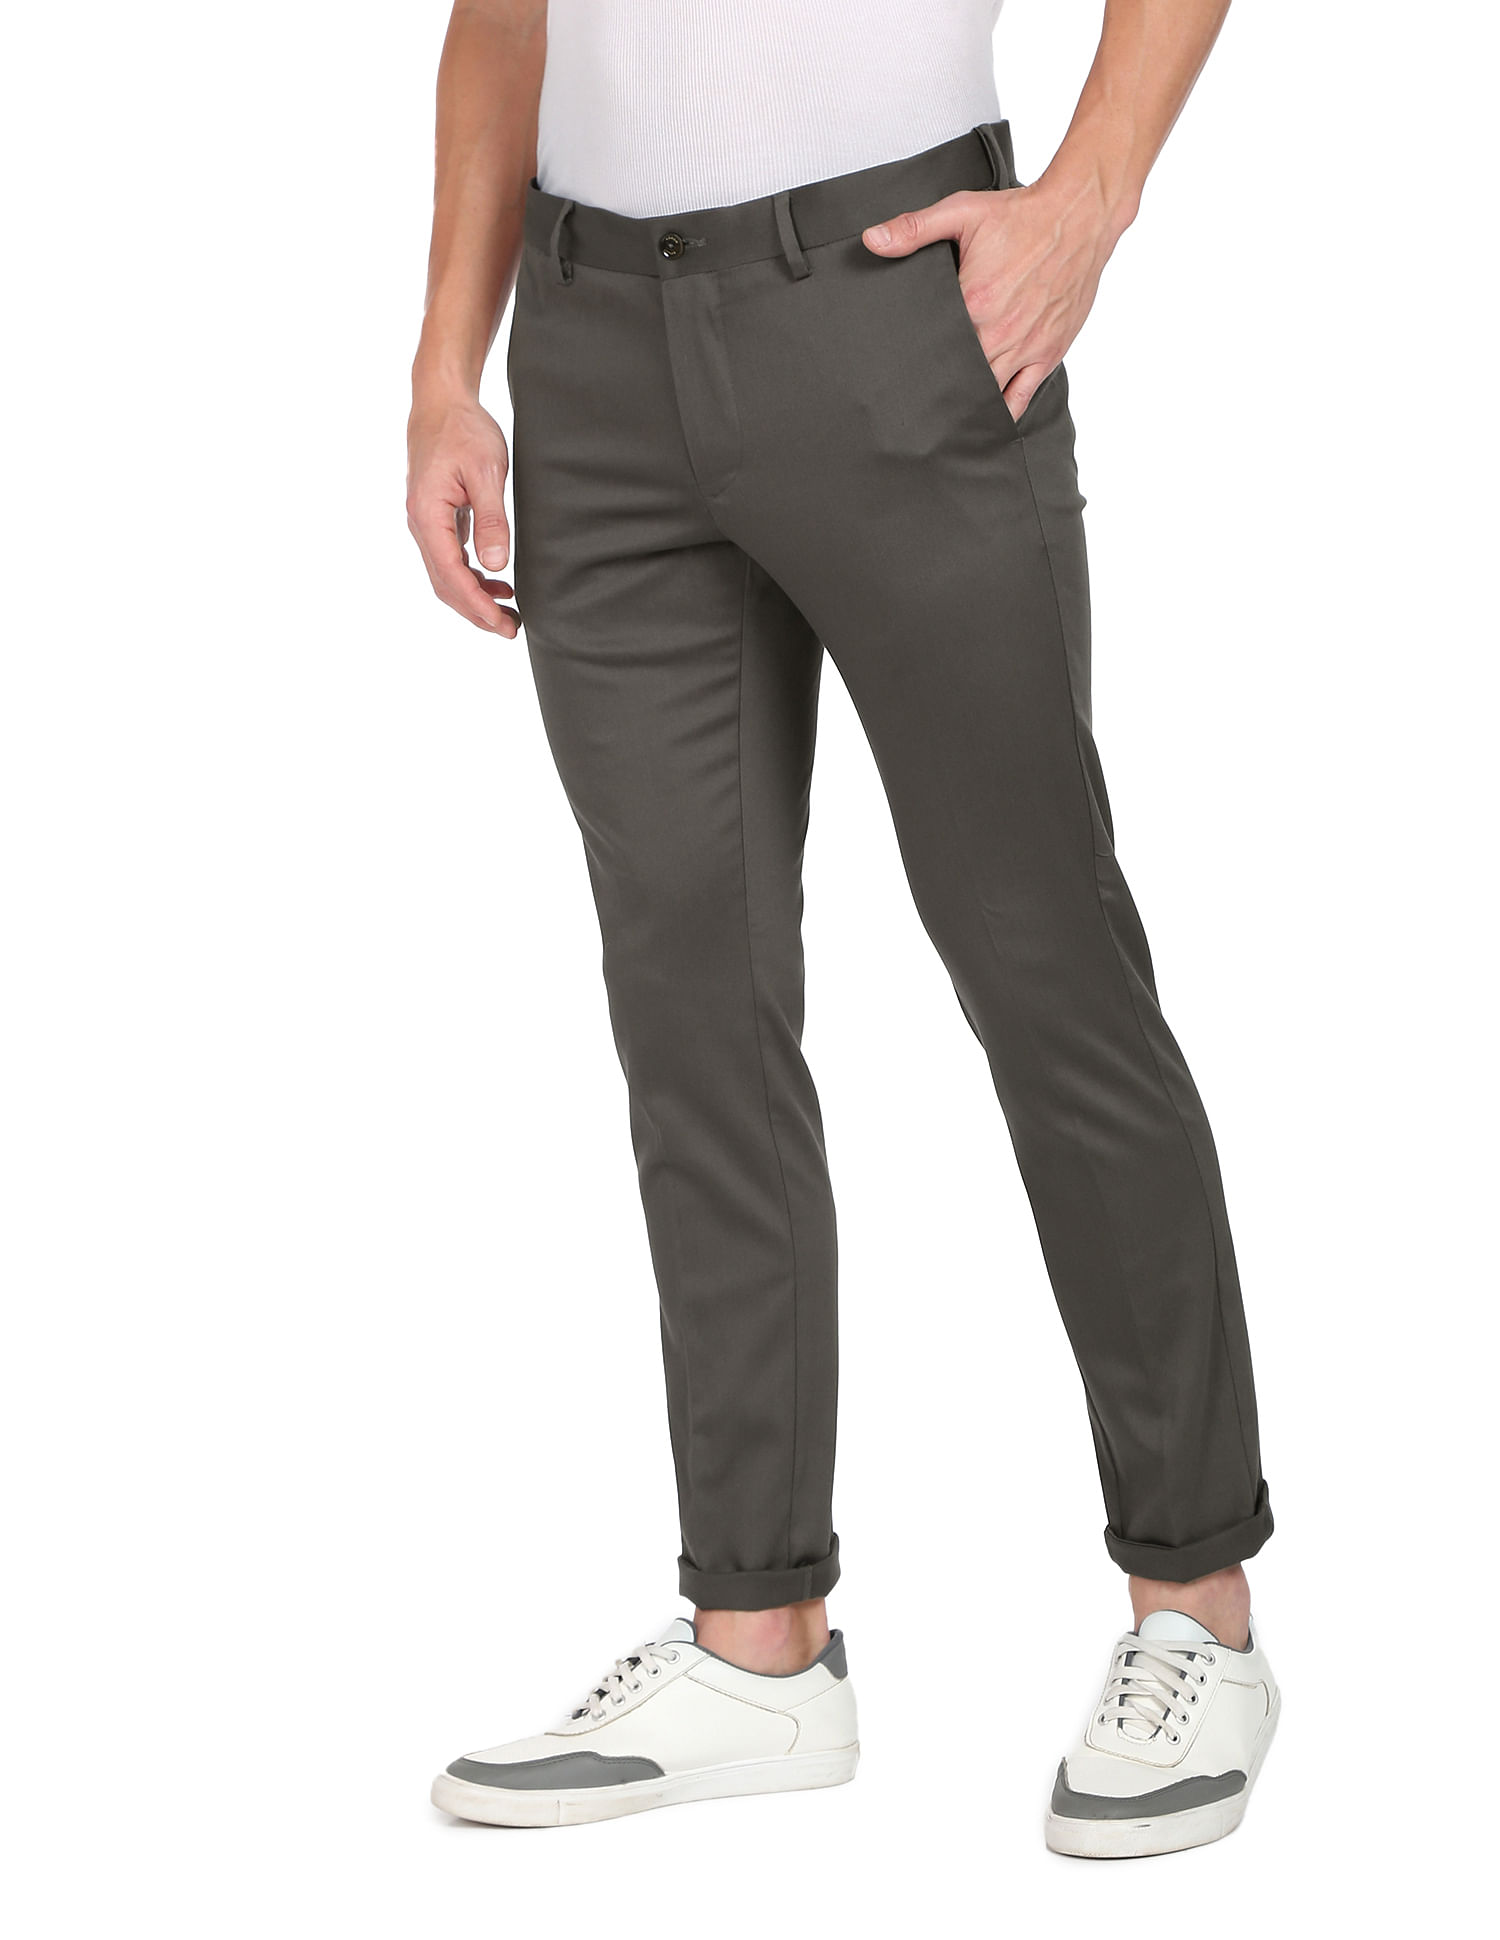 ARROW Slim Fit Men Beige Trousers  Buy ARROW Slim Fit Men Beige Trousers  Online at Best Prices in India  Flipkartcom